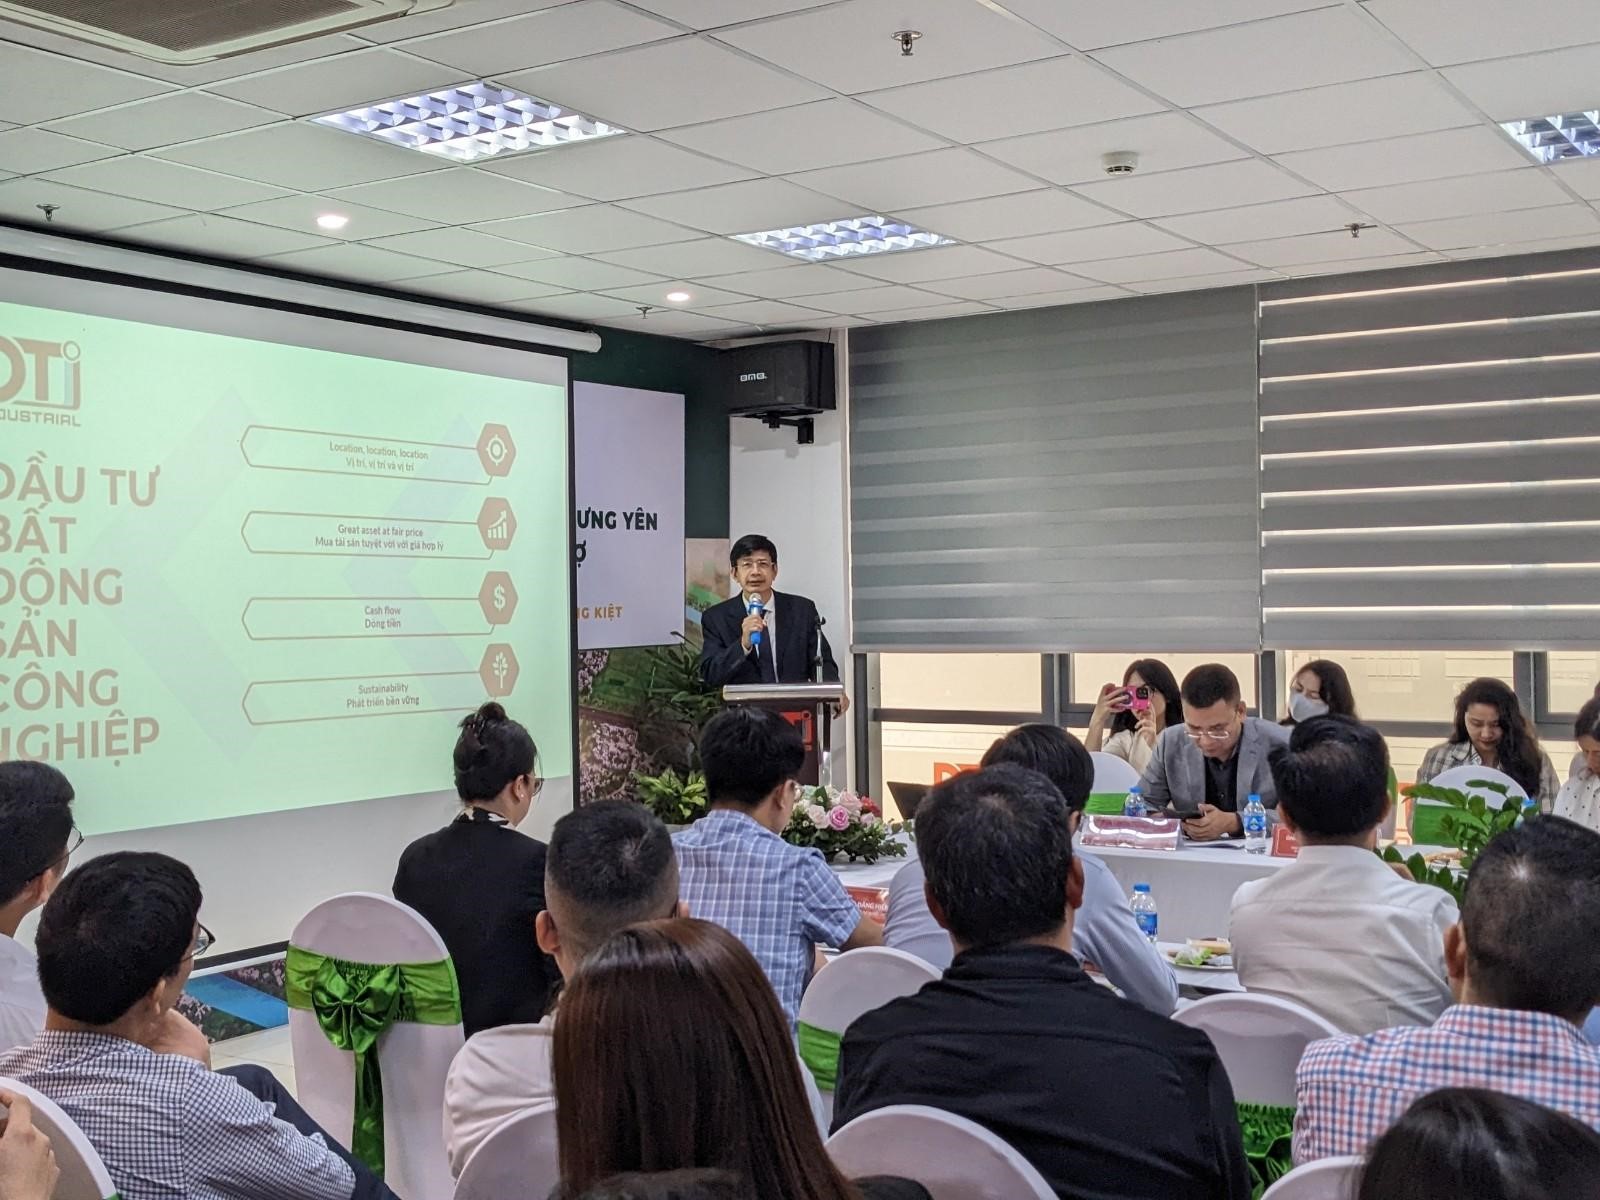 Kinh doanh - Xúc tiến đầu tư công nghiệp tỉnh Hưng Yên - Cơ hội kết nối với chuỗi cung ứng công nghiệp tại Hưng Yên cho ngành công nghiệp hỗ trợ